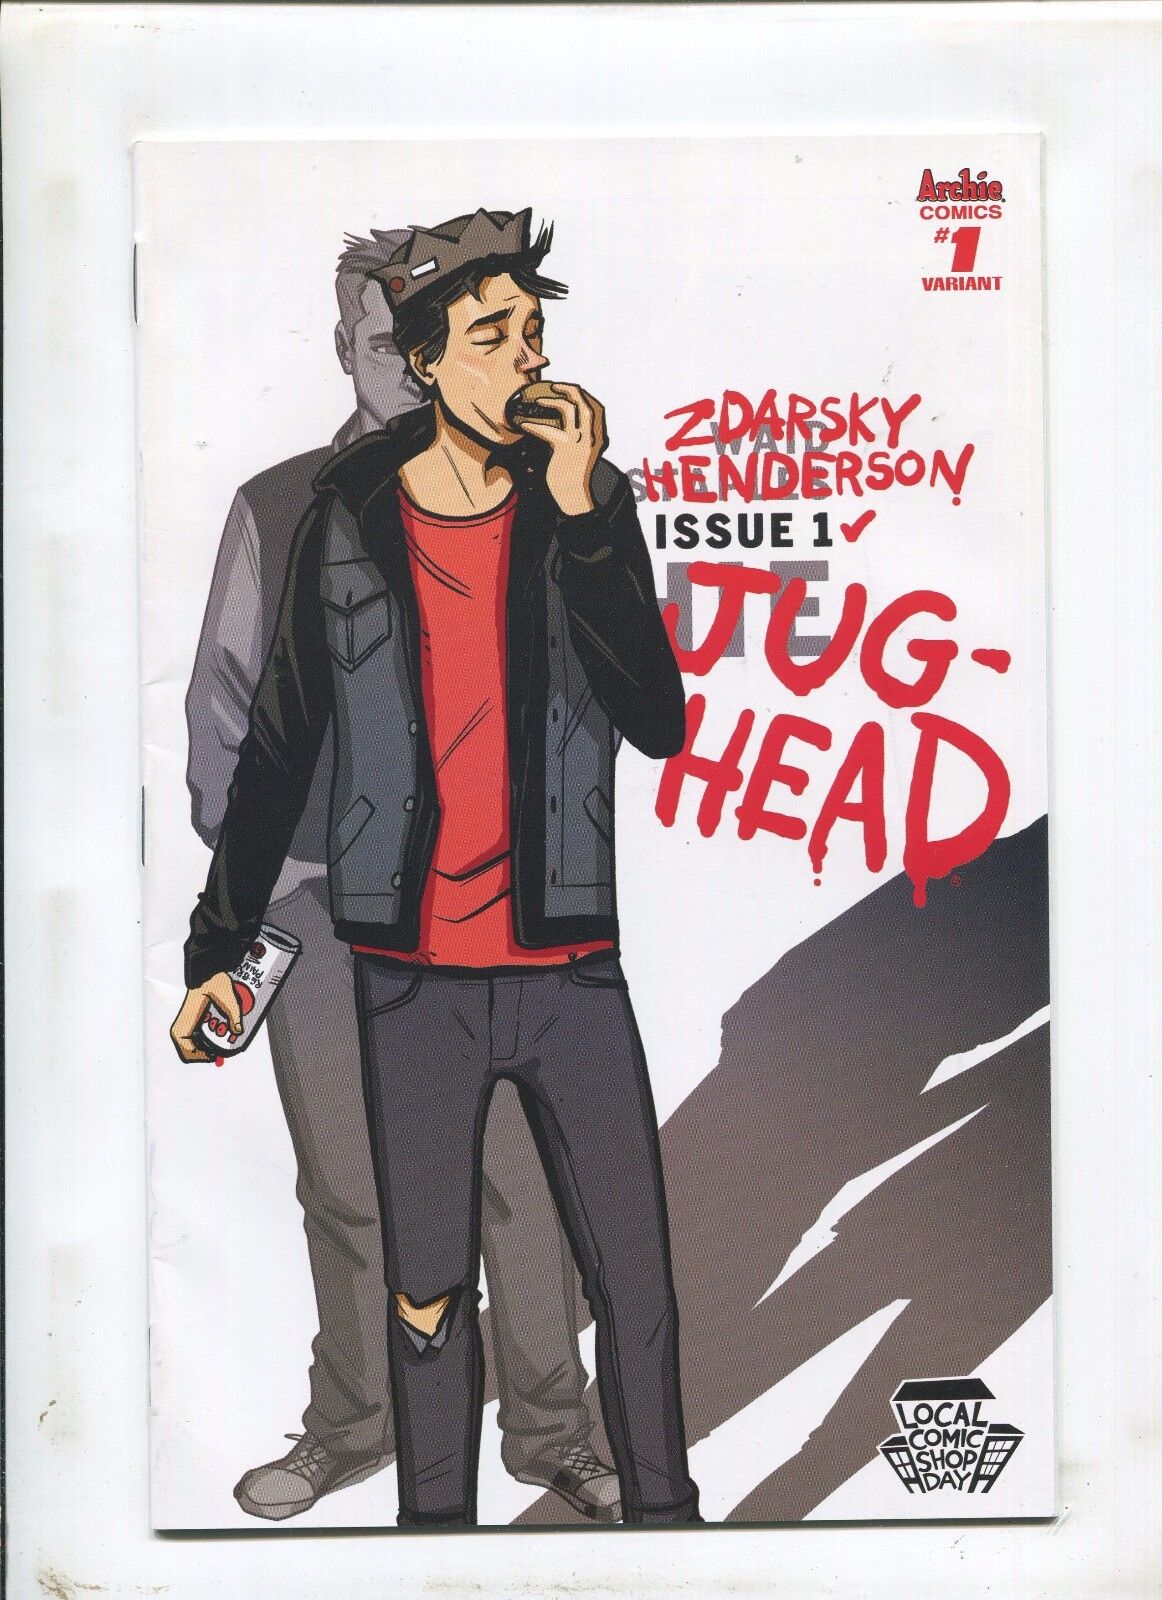 JUG-HEAD #1 (9.2) VARIANT COVER